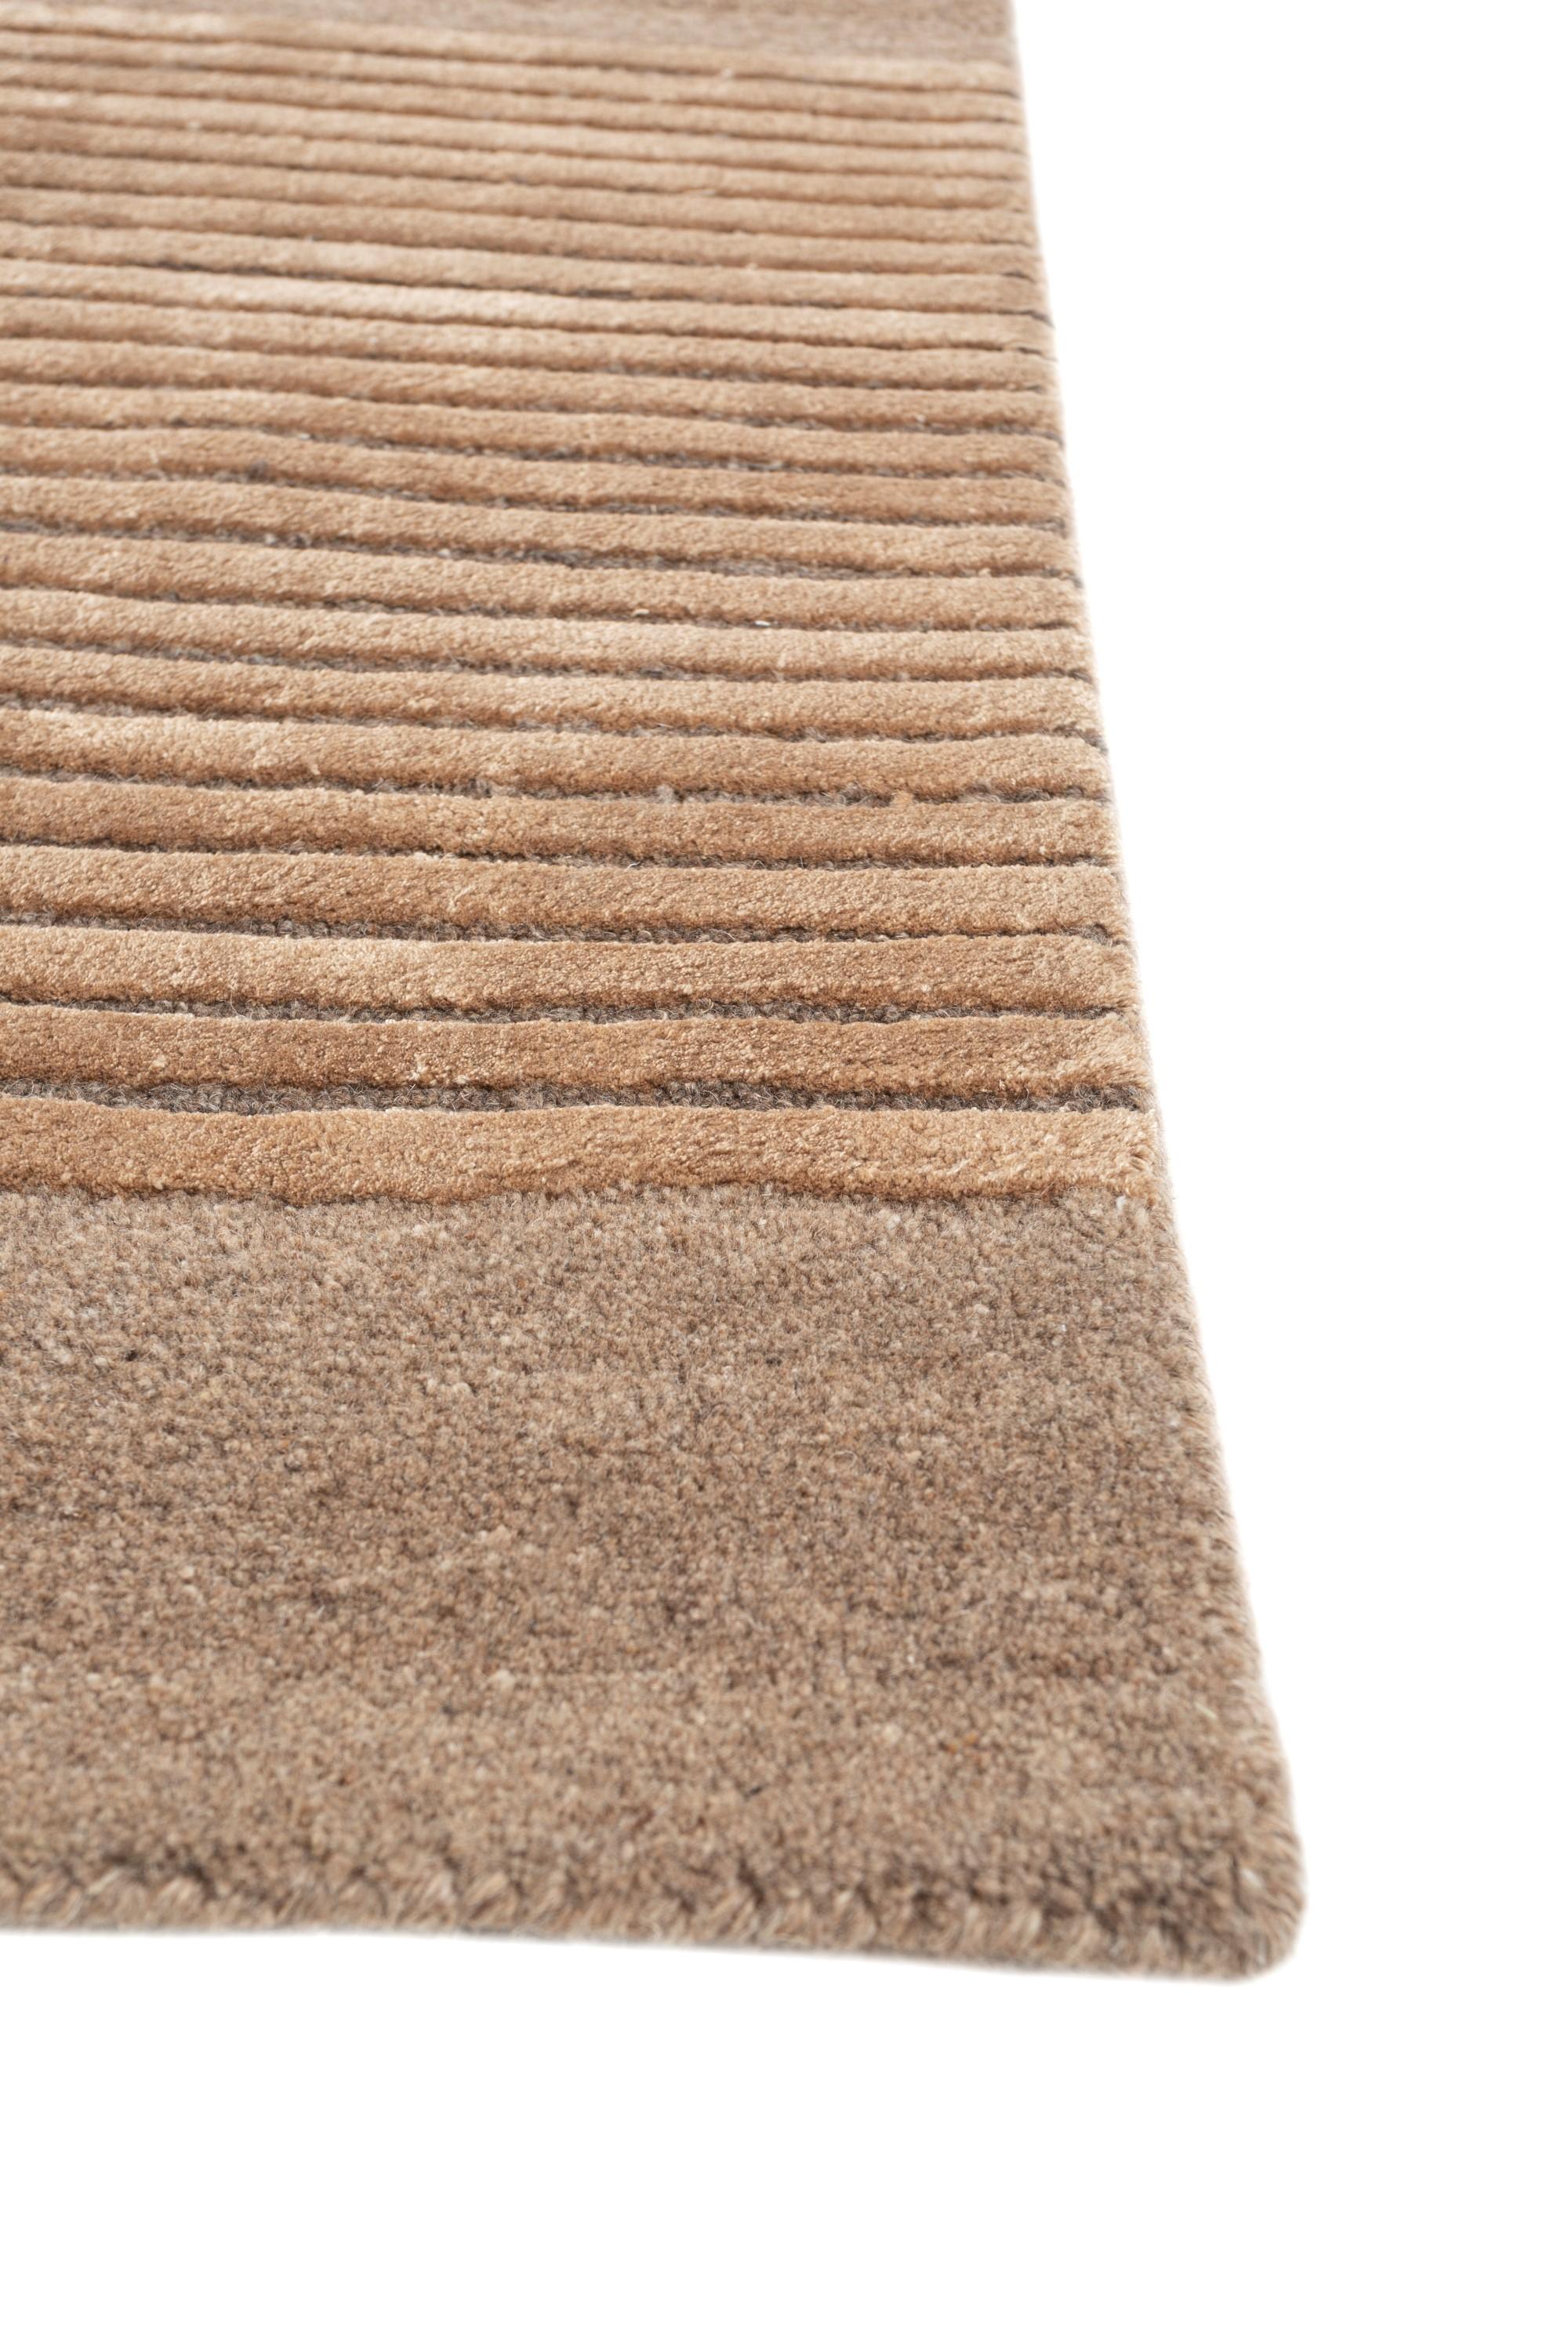 Laissez-vous séduire par le charme séduisant de ce tapis pêche de notre collection Aprezo. Ce tapis se distingue par son motif fantaisiste et incurvé, qui s'écarte délicieusement des lignes droites habituelles. Contrairement à la rigidité des